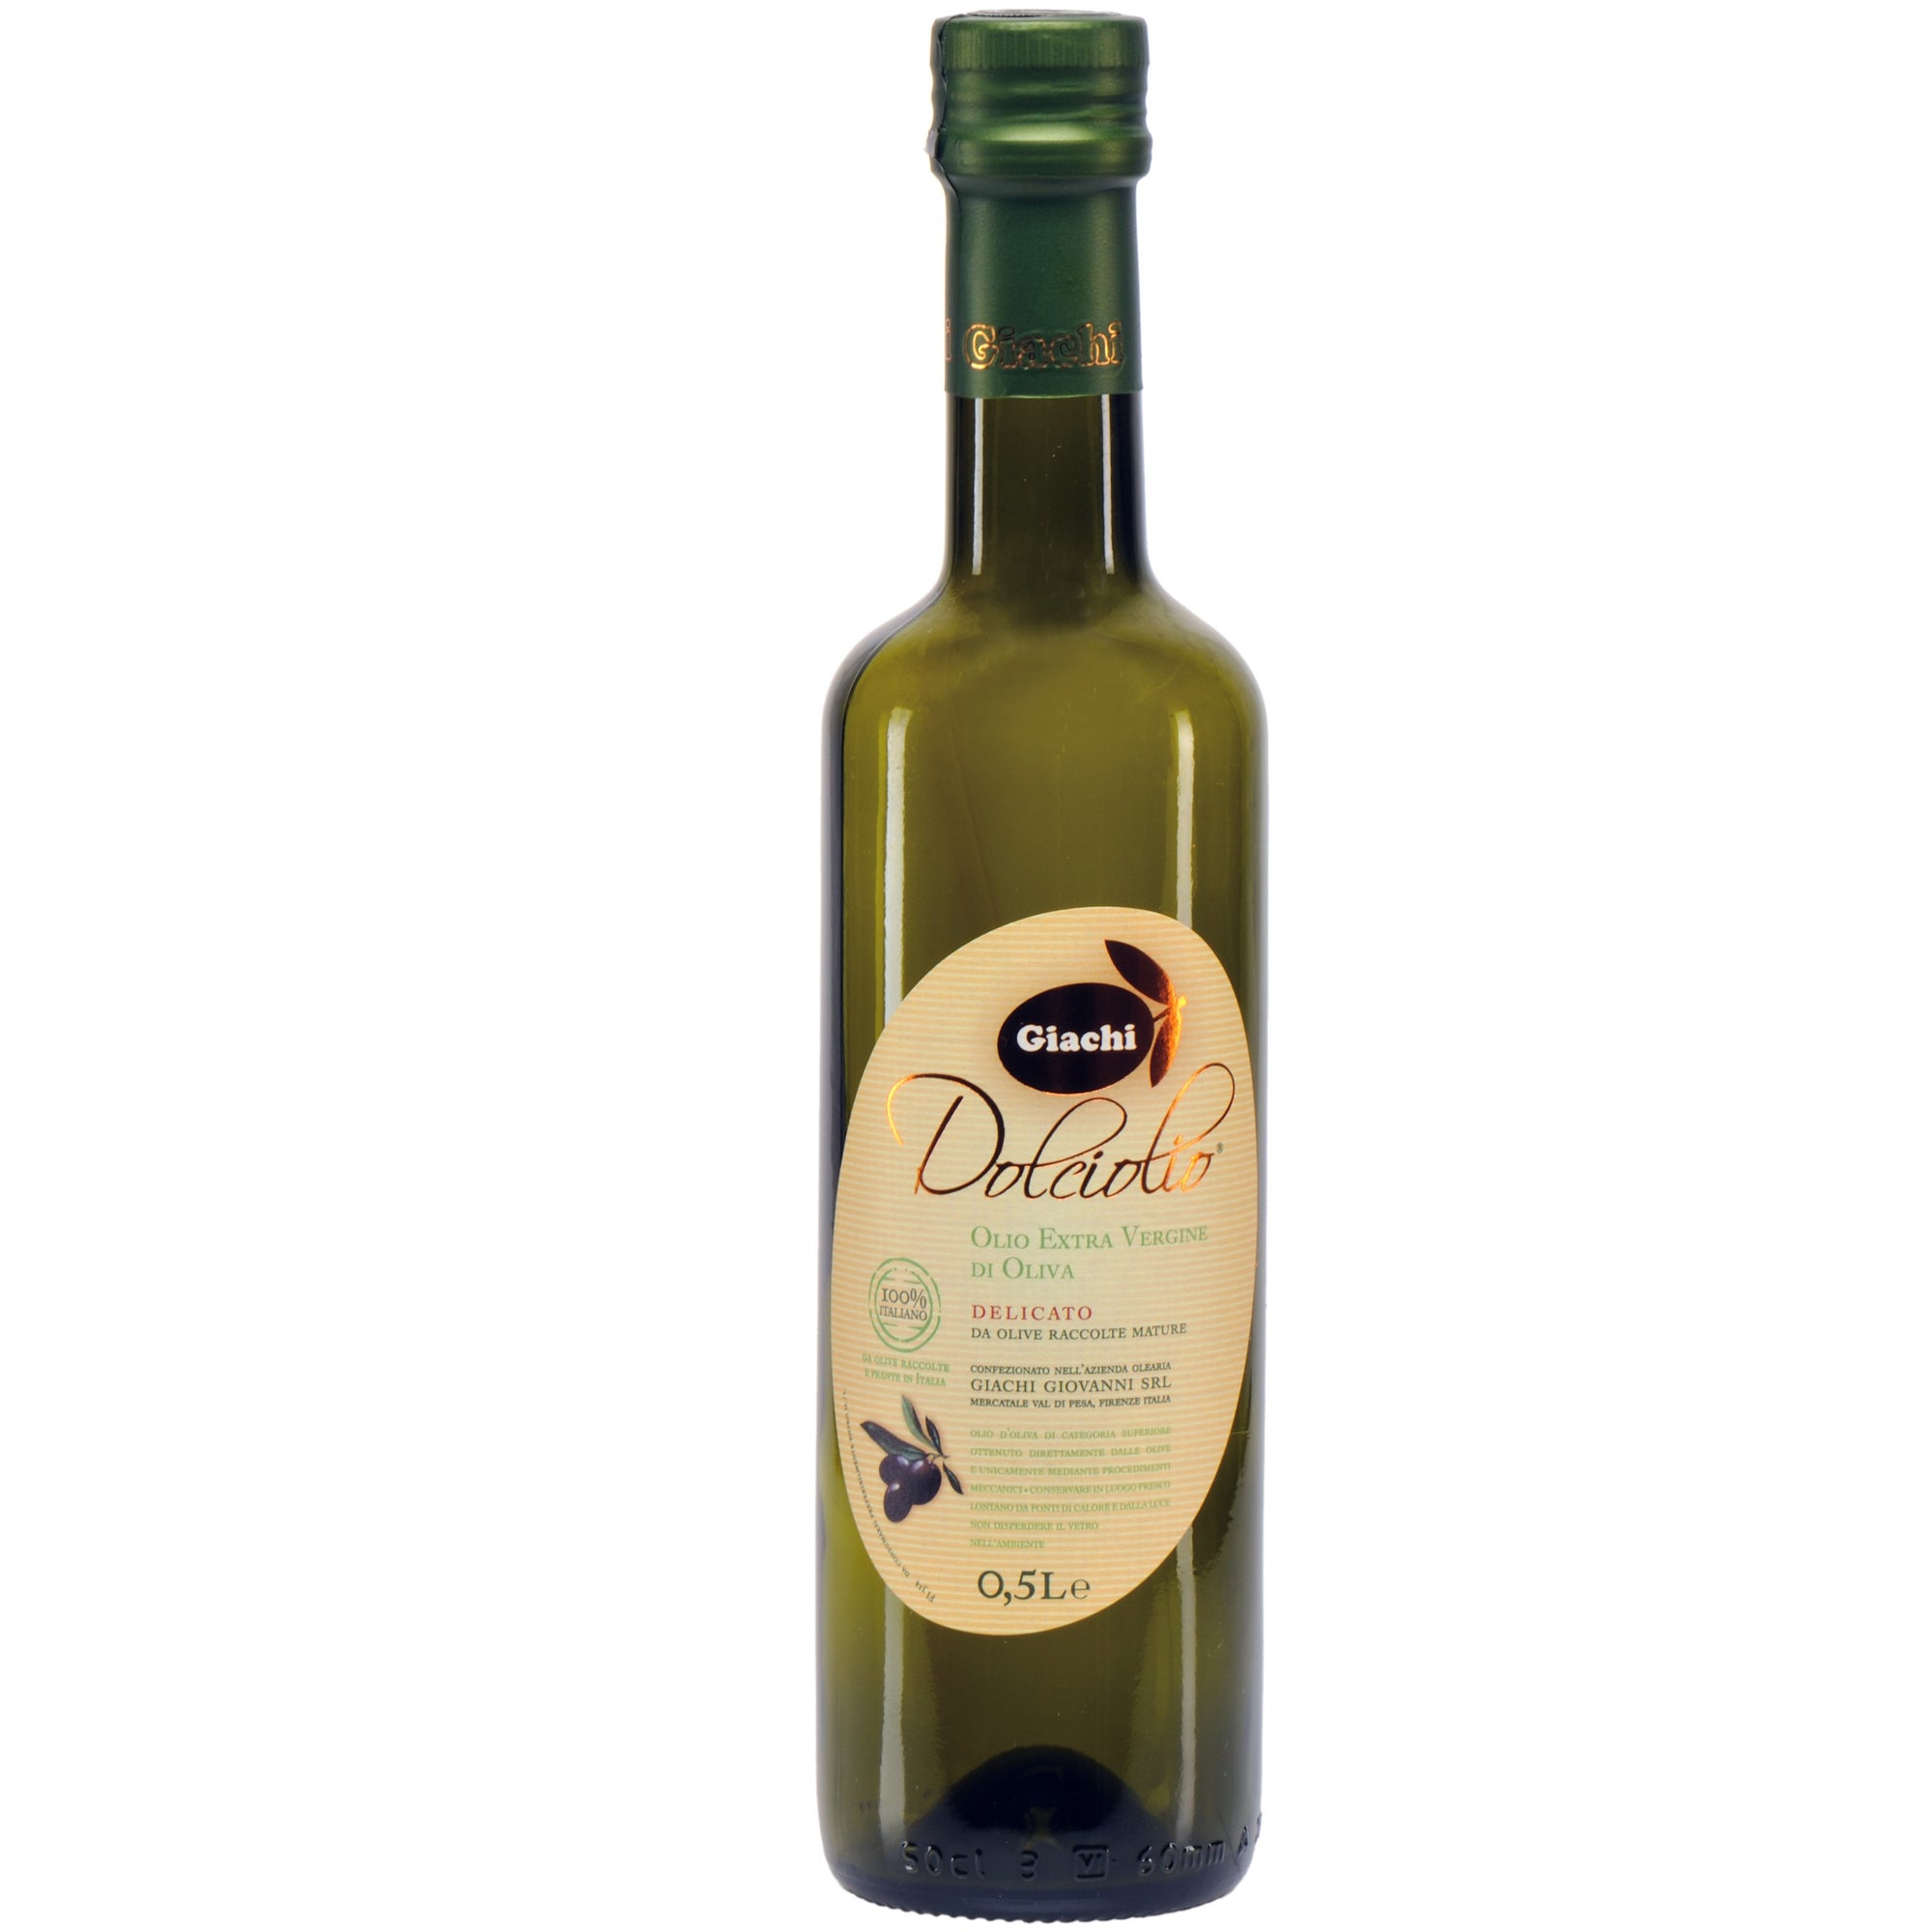 Giachi Dolciolio Extra Virgin Olive Oil 500mL